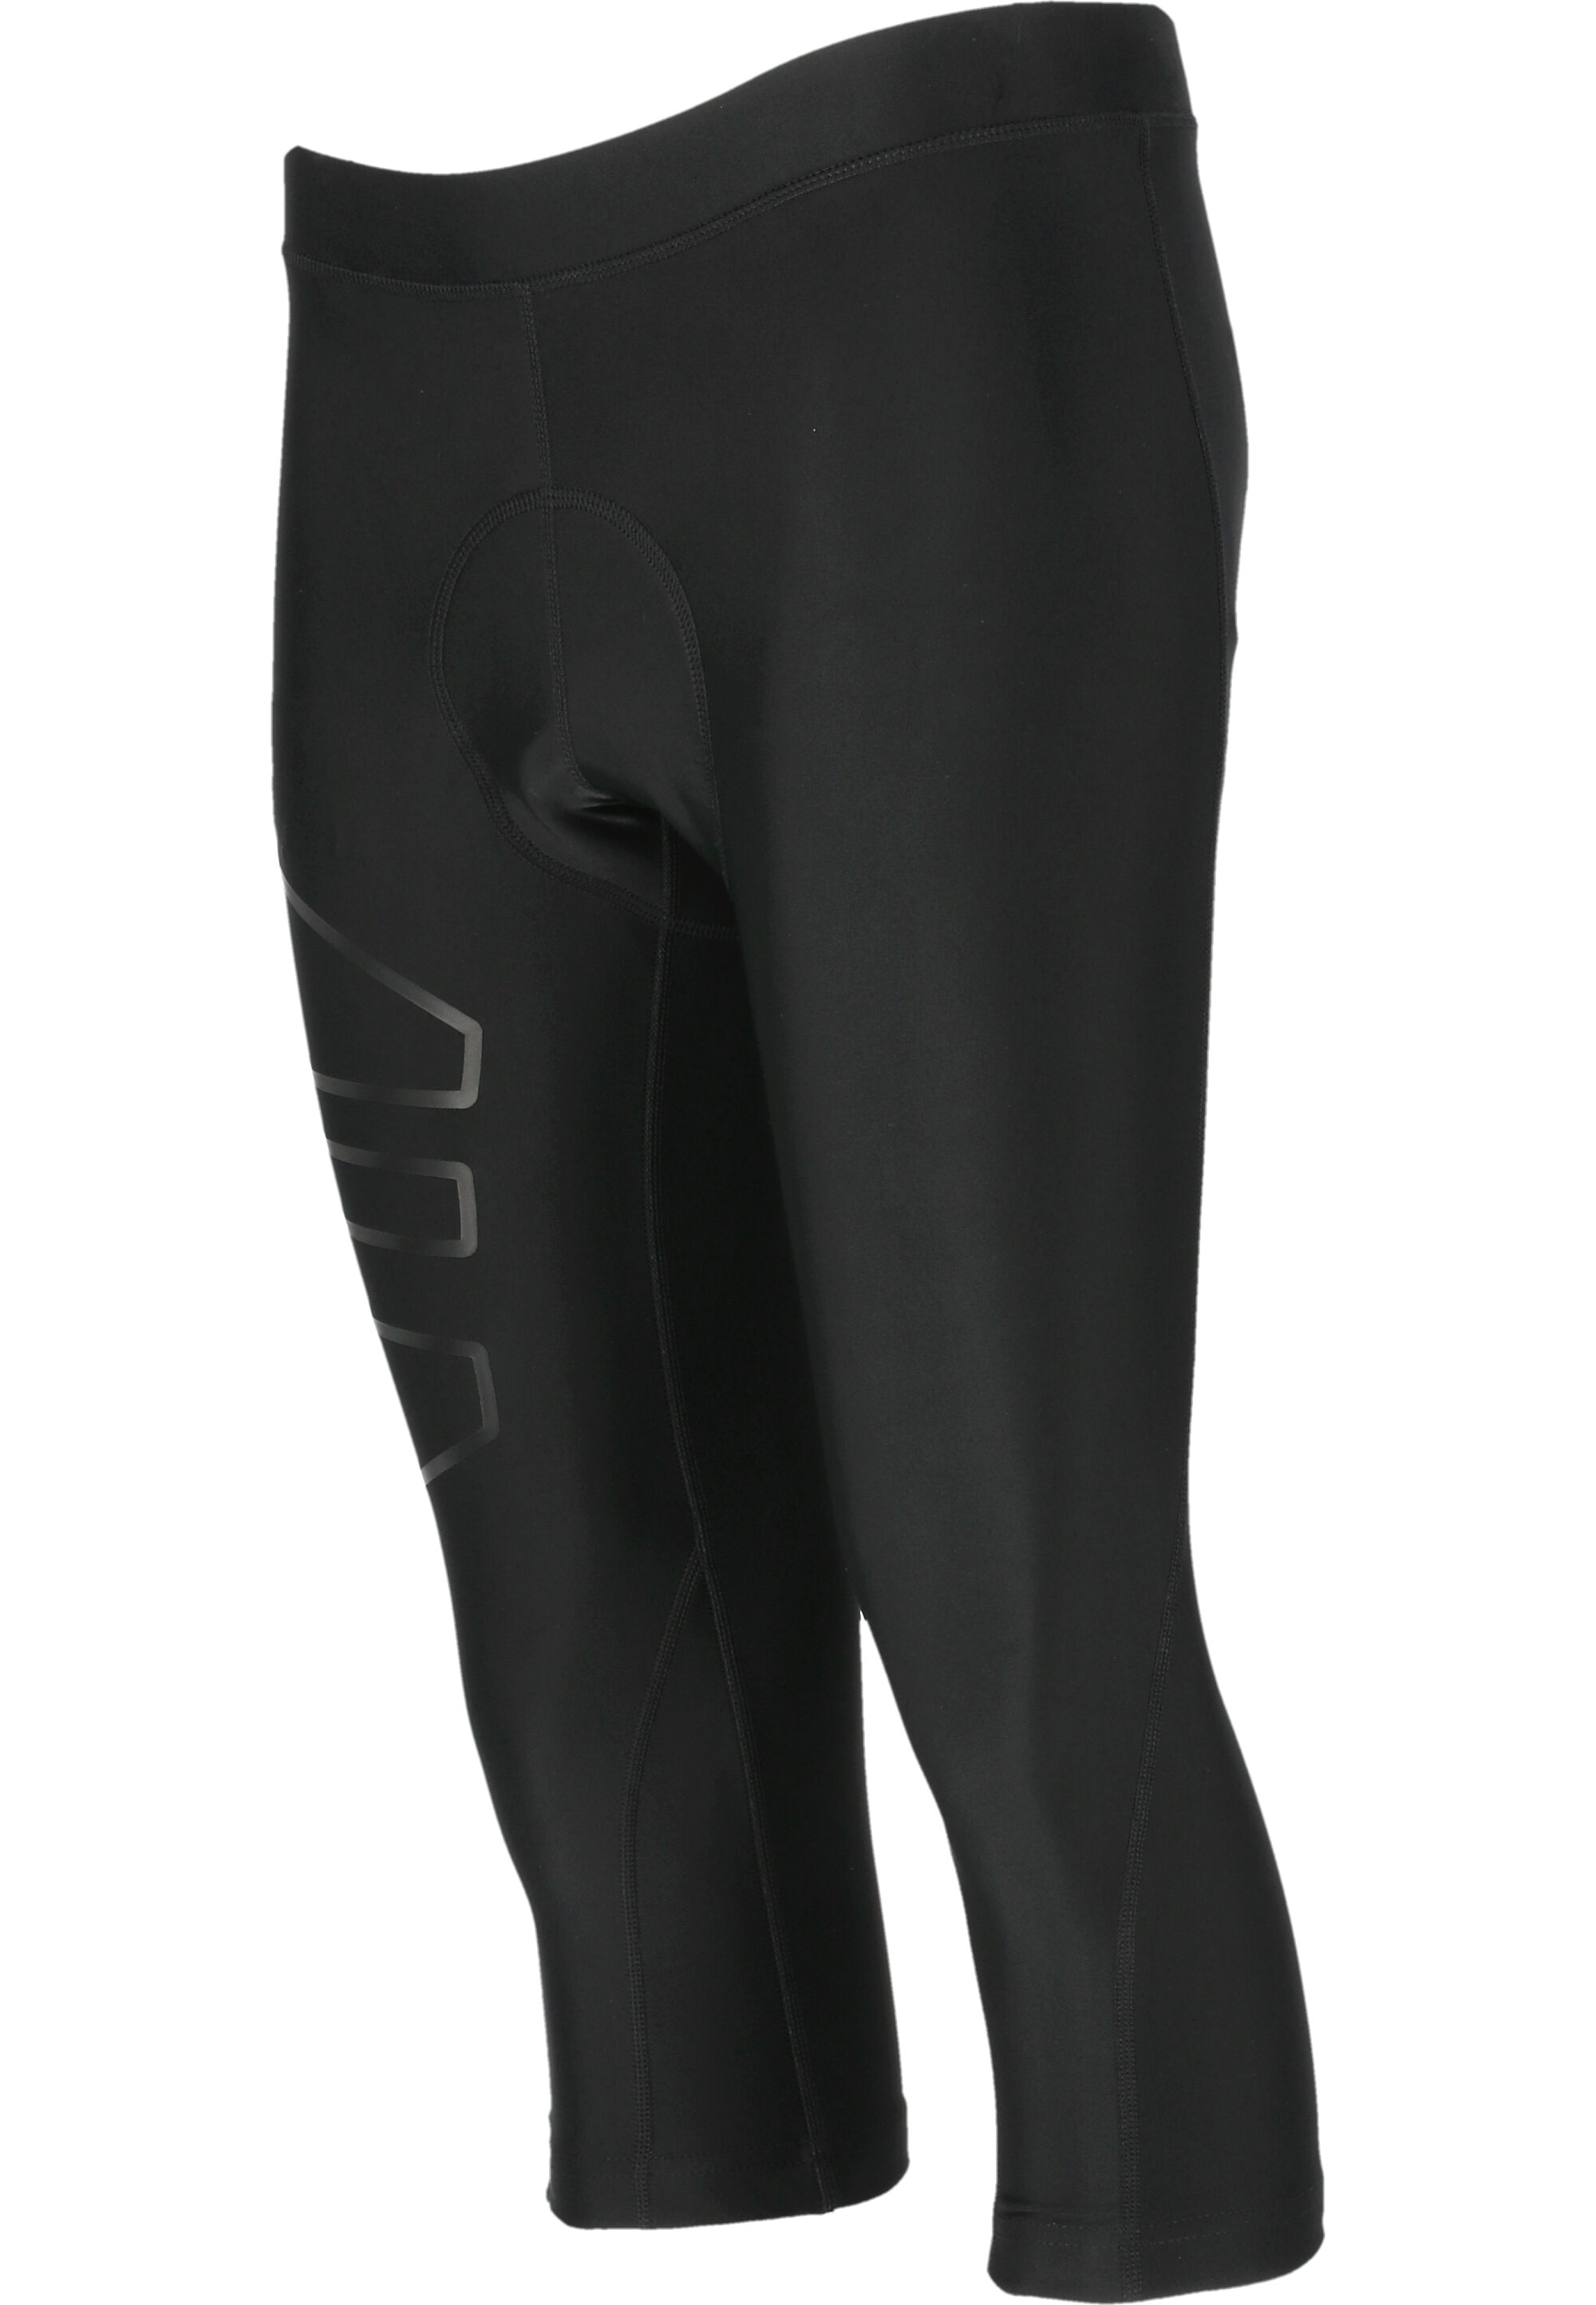 Спортивные брюки Endurance Rad Jayne W 3/4 Cycling Tights XQL, цвет 1001 Black